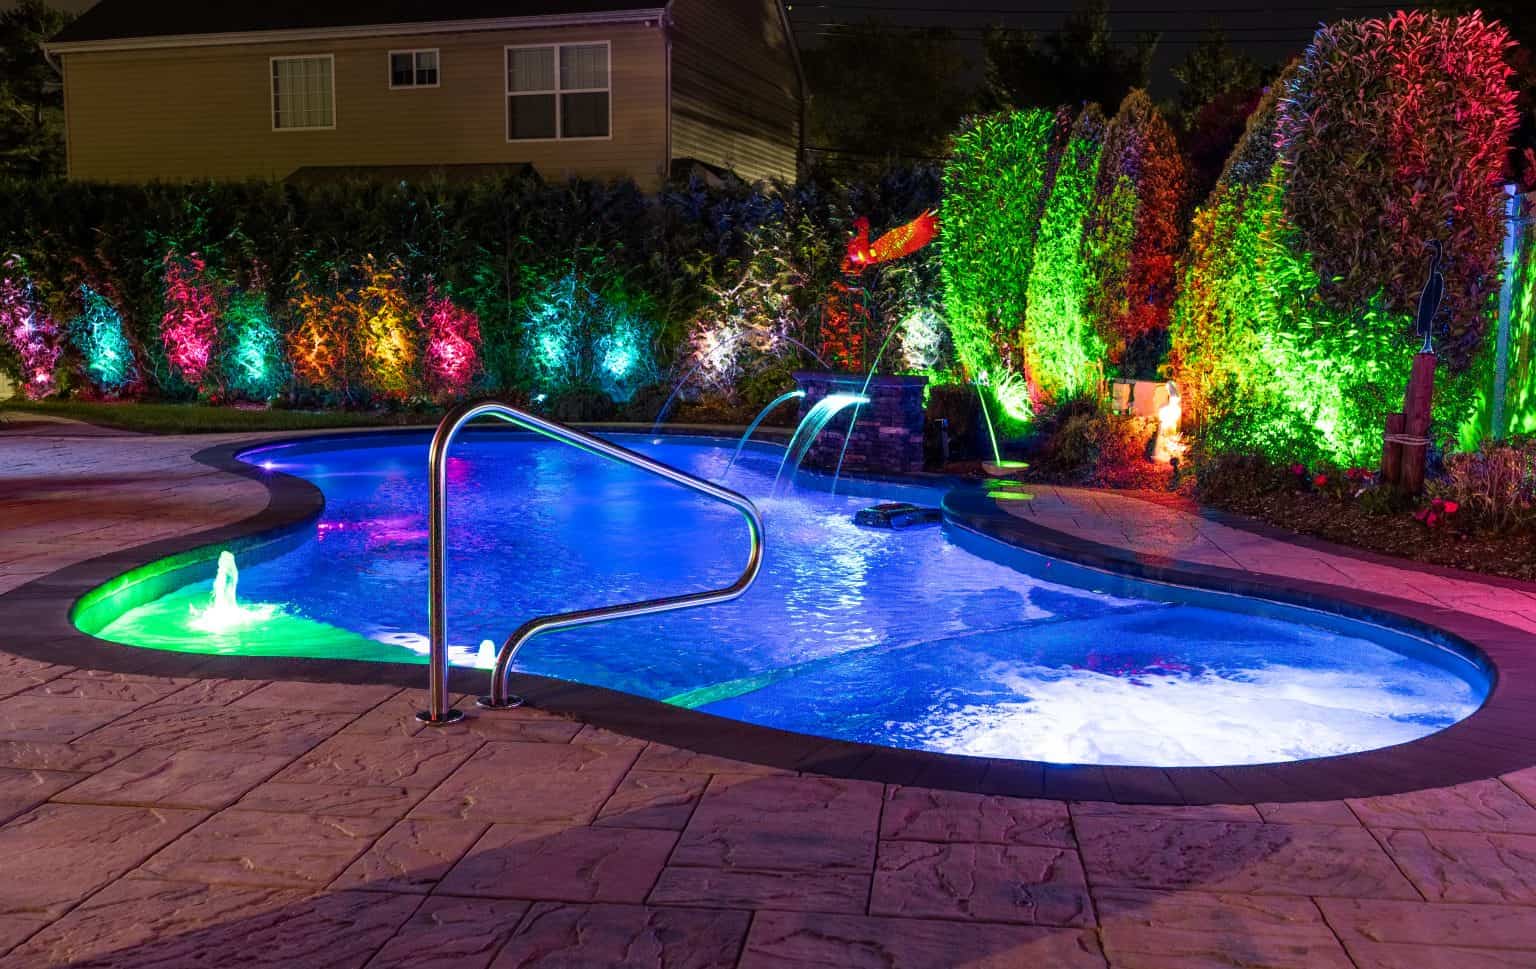 custom pool in yard at nighttime.